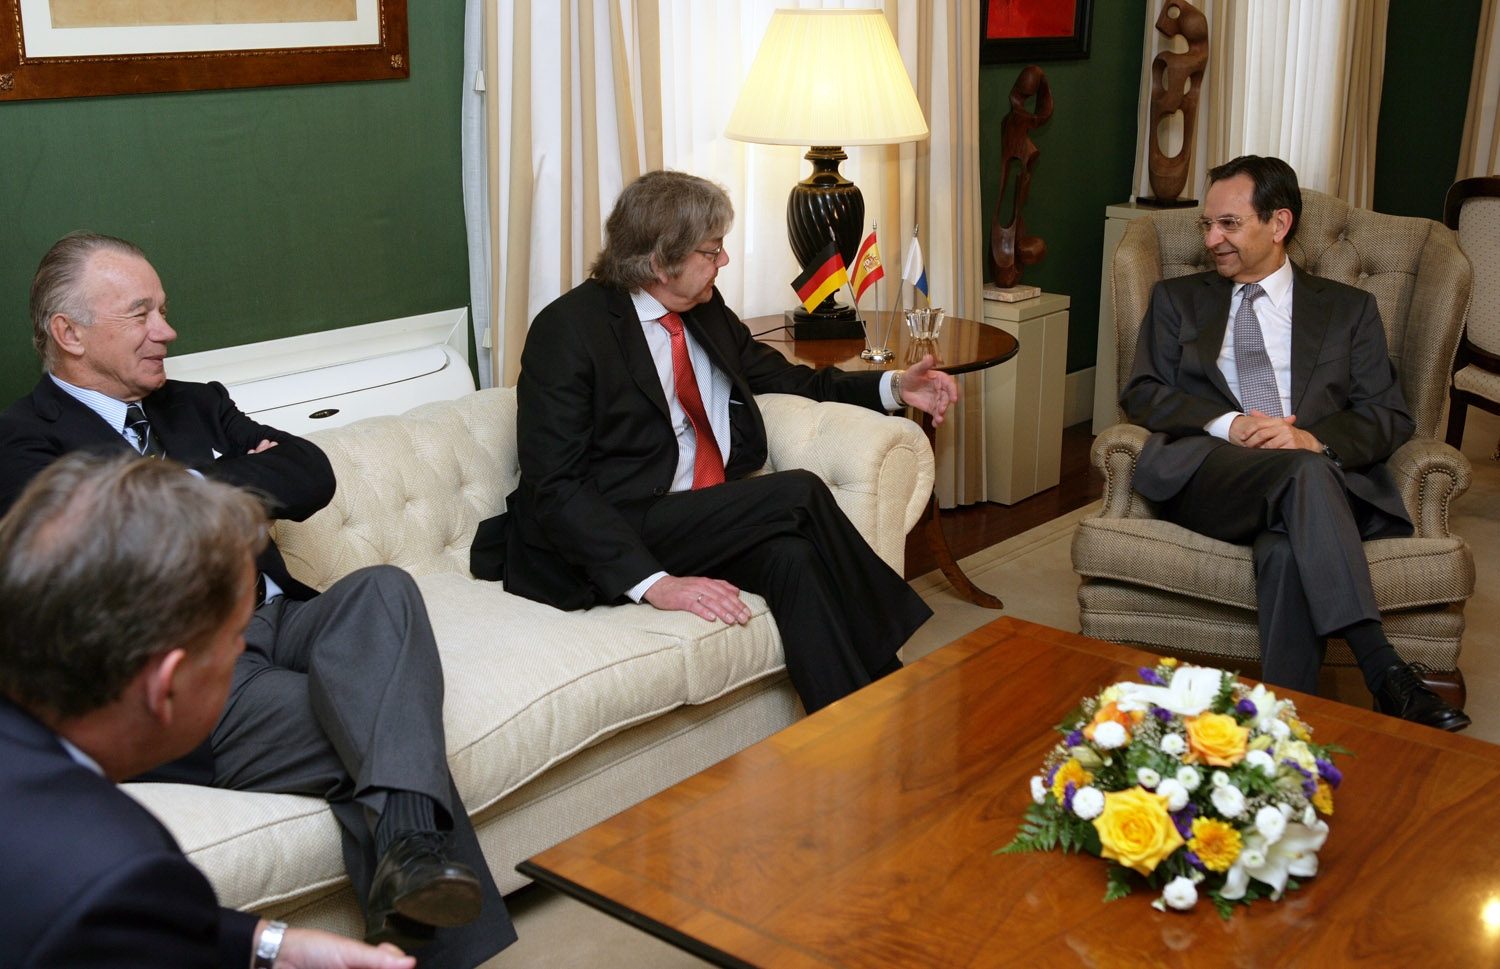 Visita del Embajador de la República Federal de Alemania en España